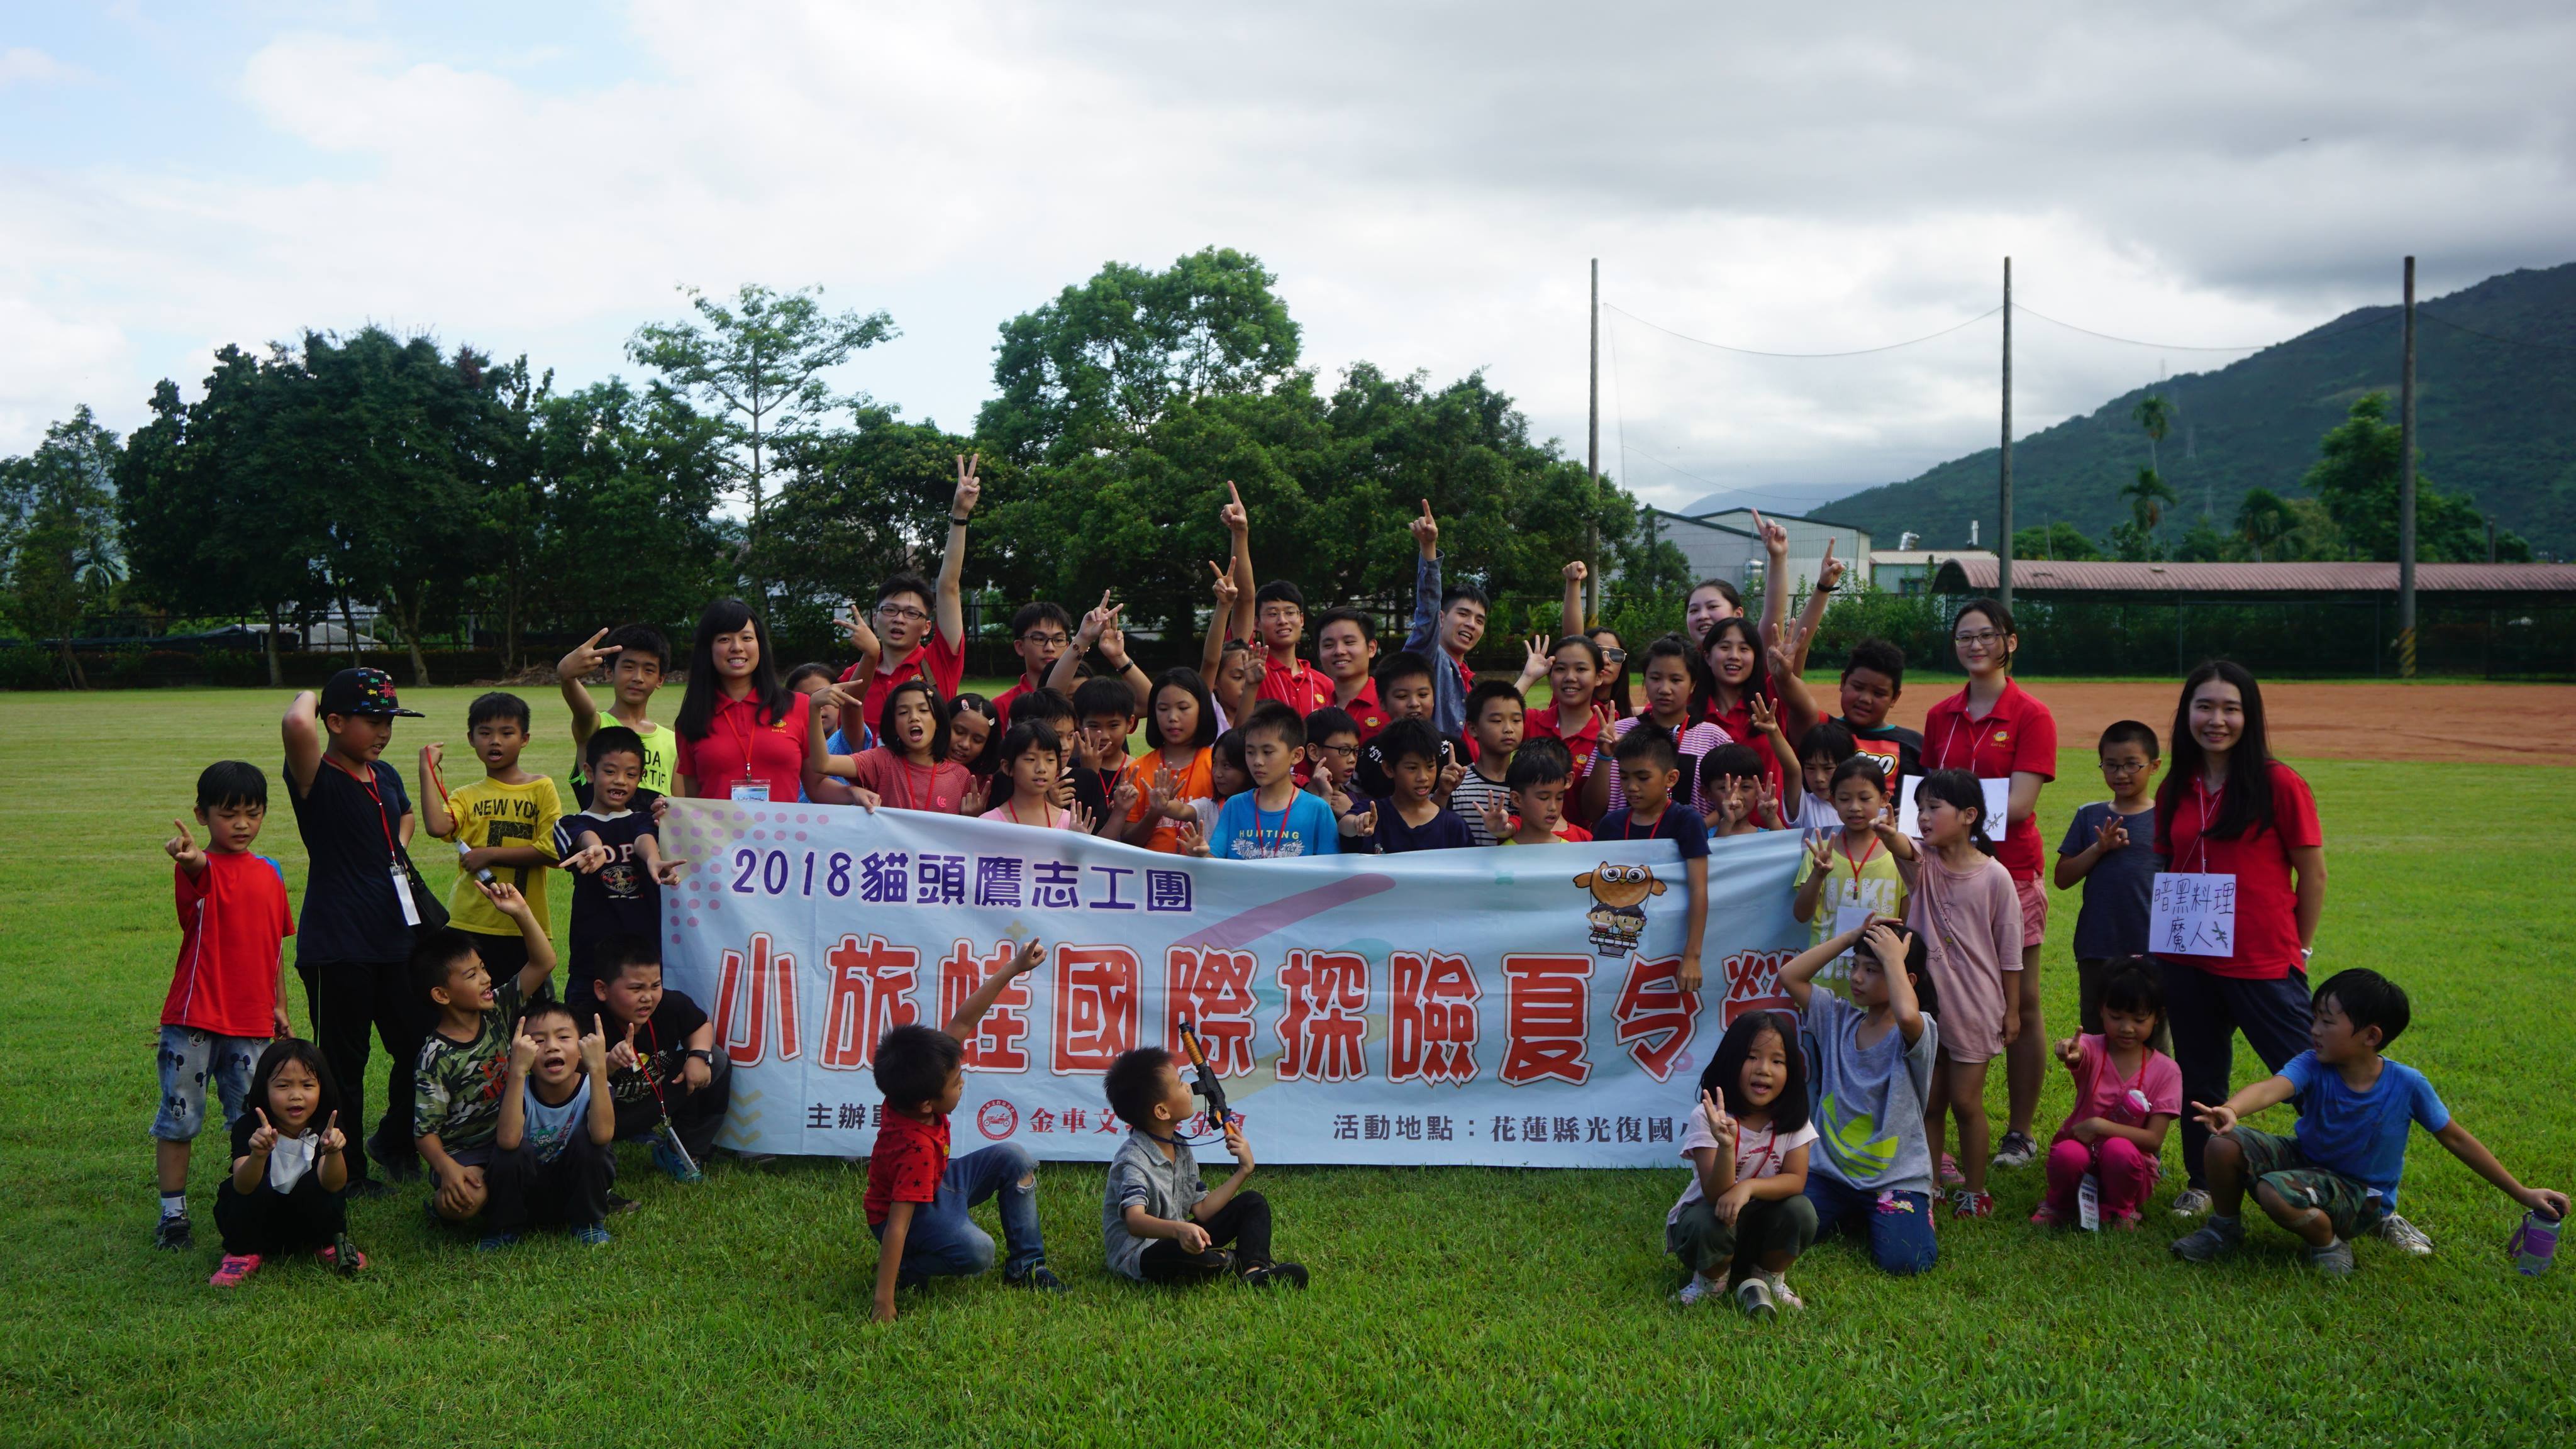 金車貓頭鷹志工隊暑期前往花蓮陪伴百位國小同學認識世界